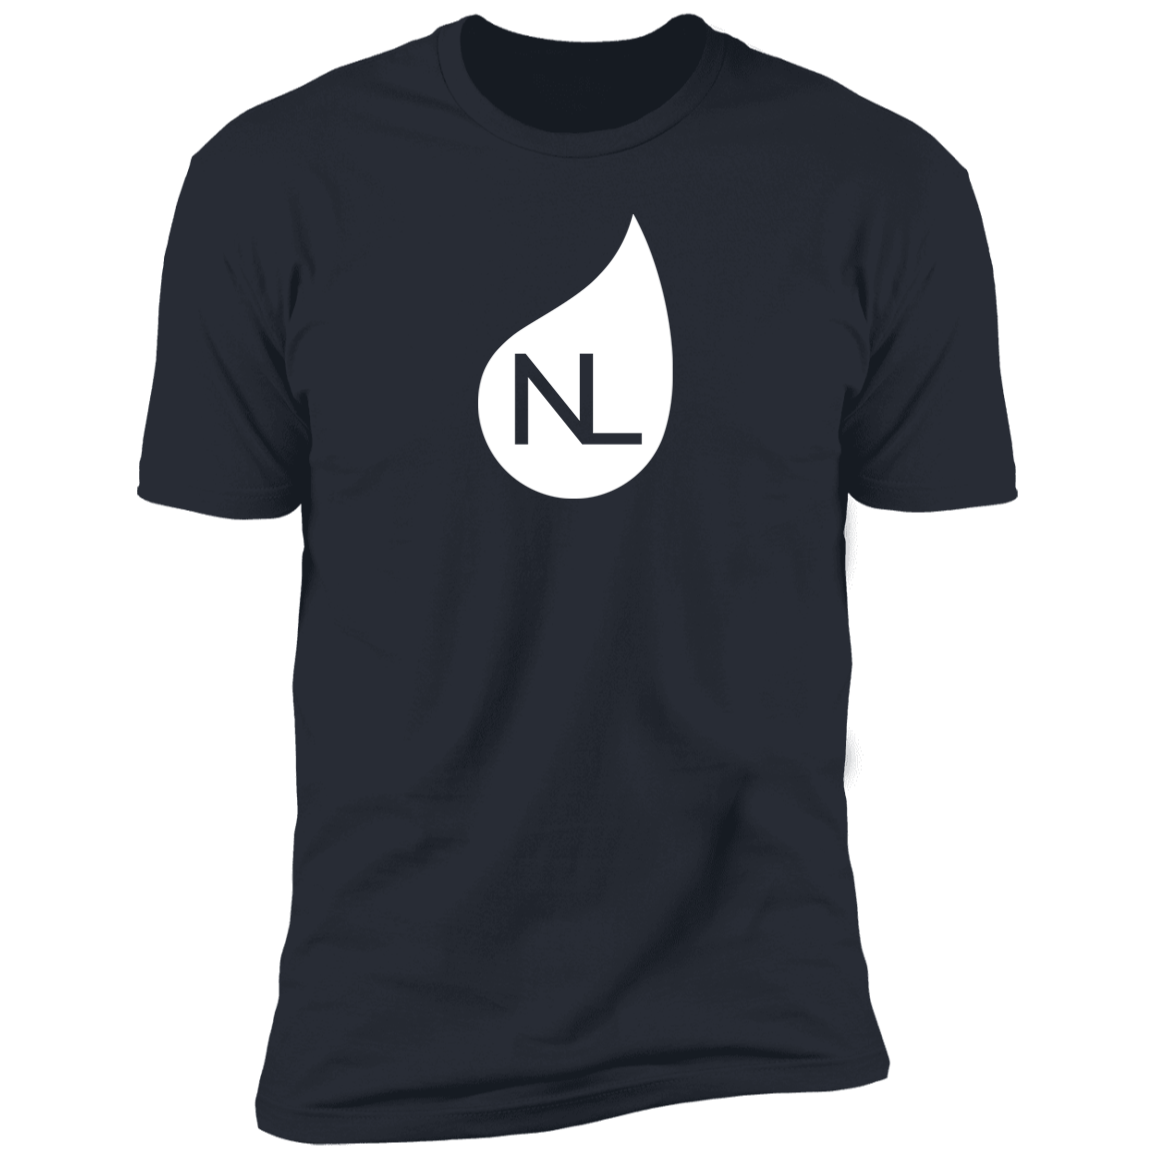 NL Shirts - White Icon